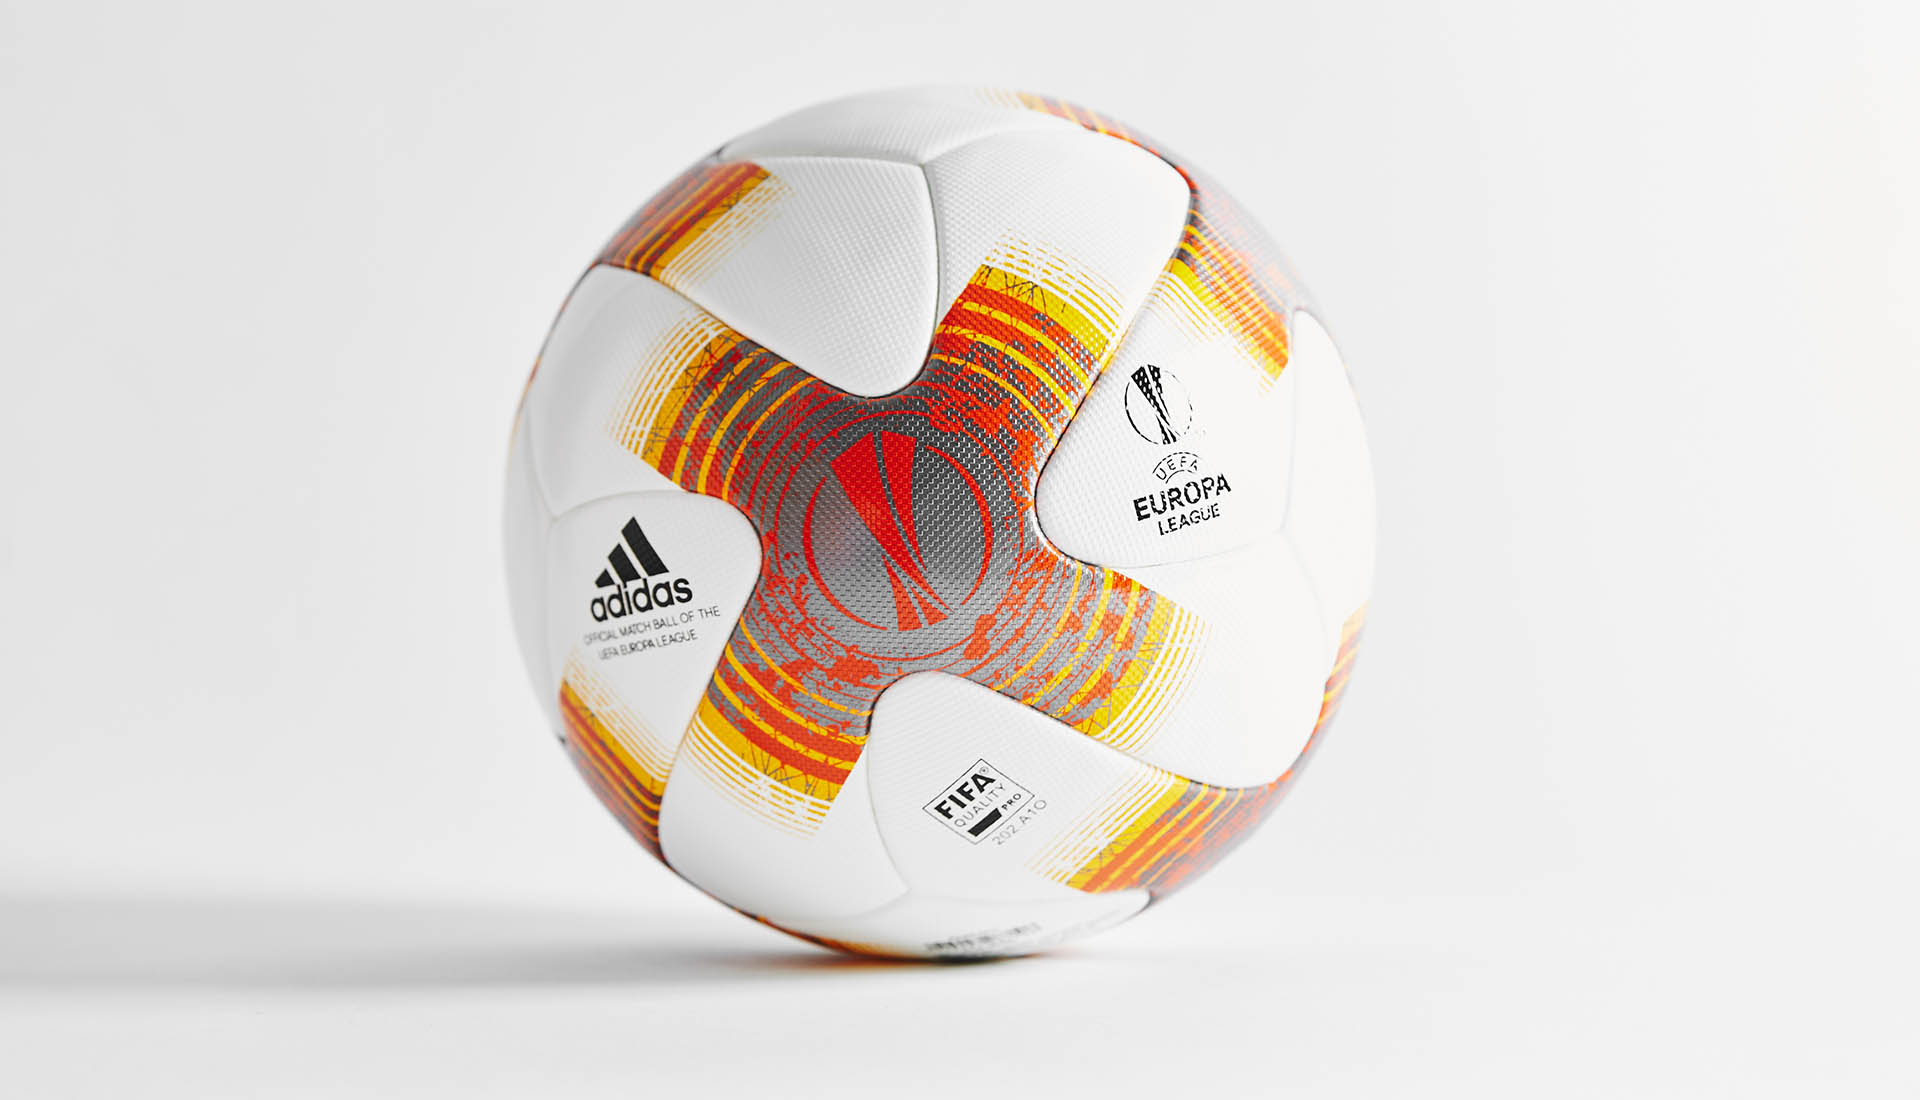 adidas europa league ball